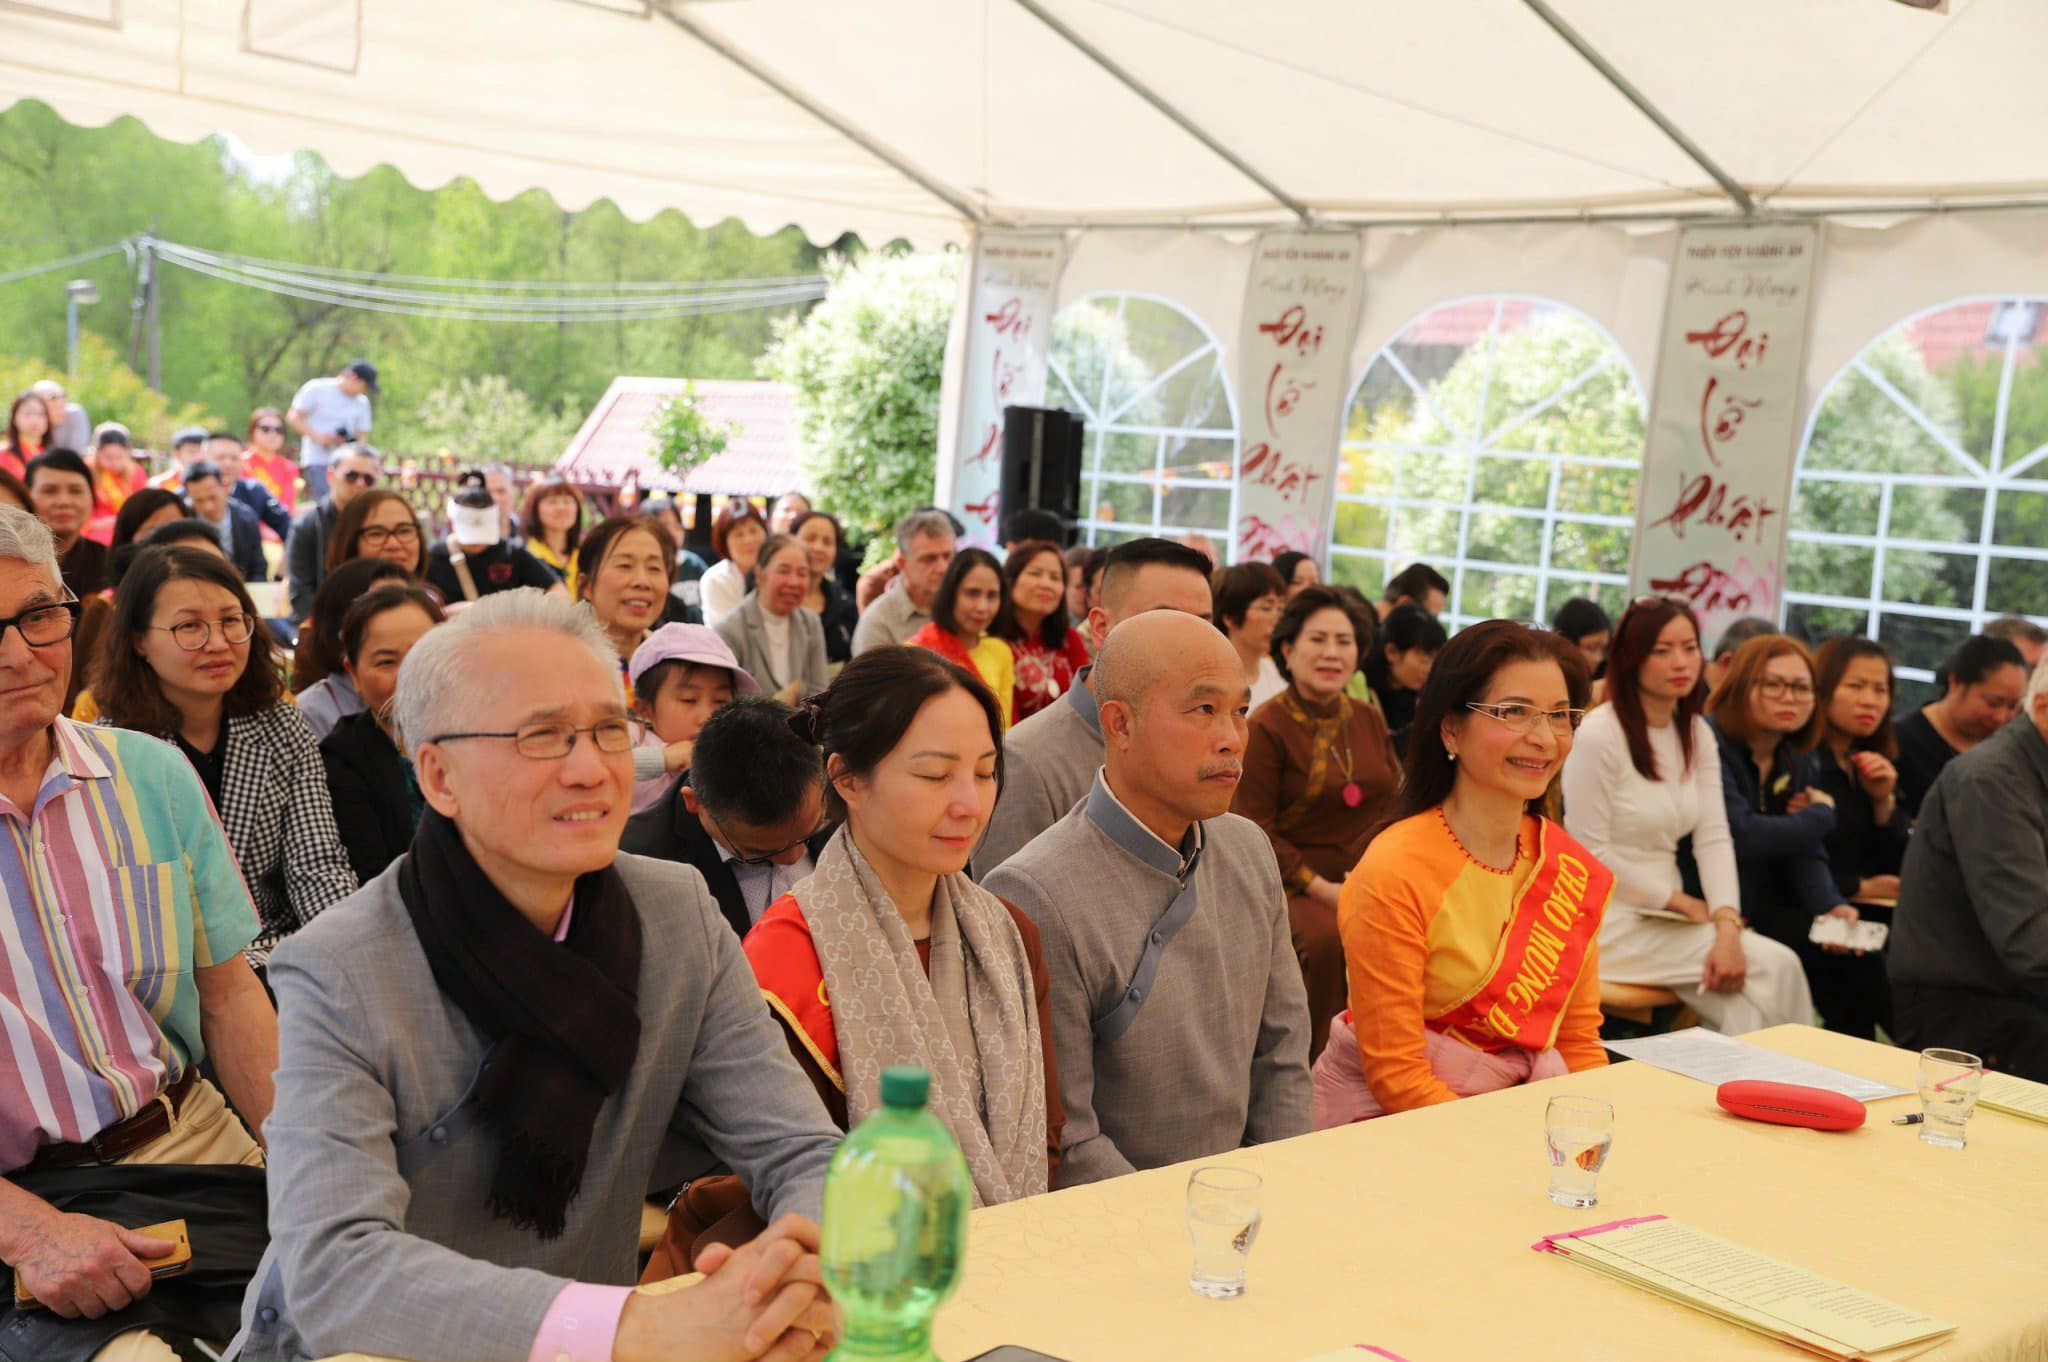 Sau nghi thức chào đạo kỳ và tưởng niệm bốn ơn, đại chúng lắng nghe thầy Tuệ Khai tuyên đọc bức thư chúc mừng Phật Đản của thầy viện chủ thiền viện Khánh An gửi đến cộng đồng Phật tử